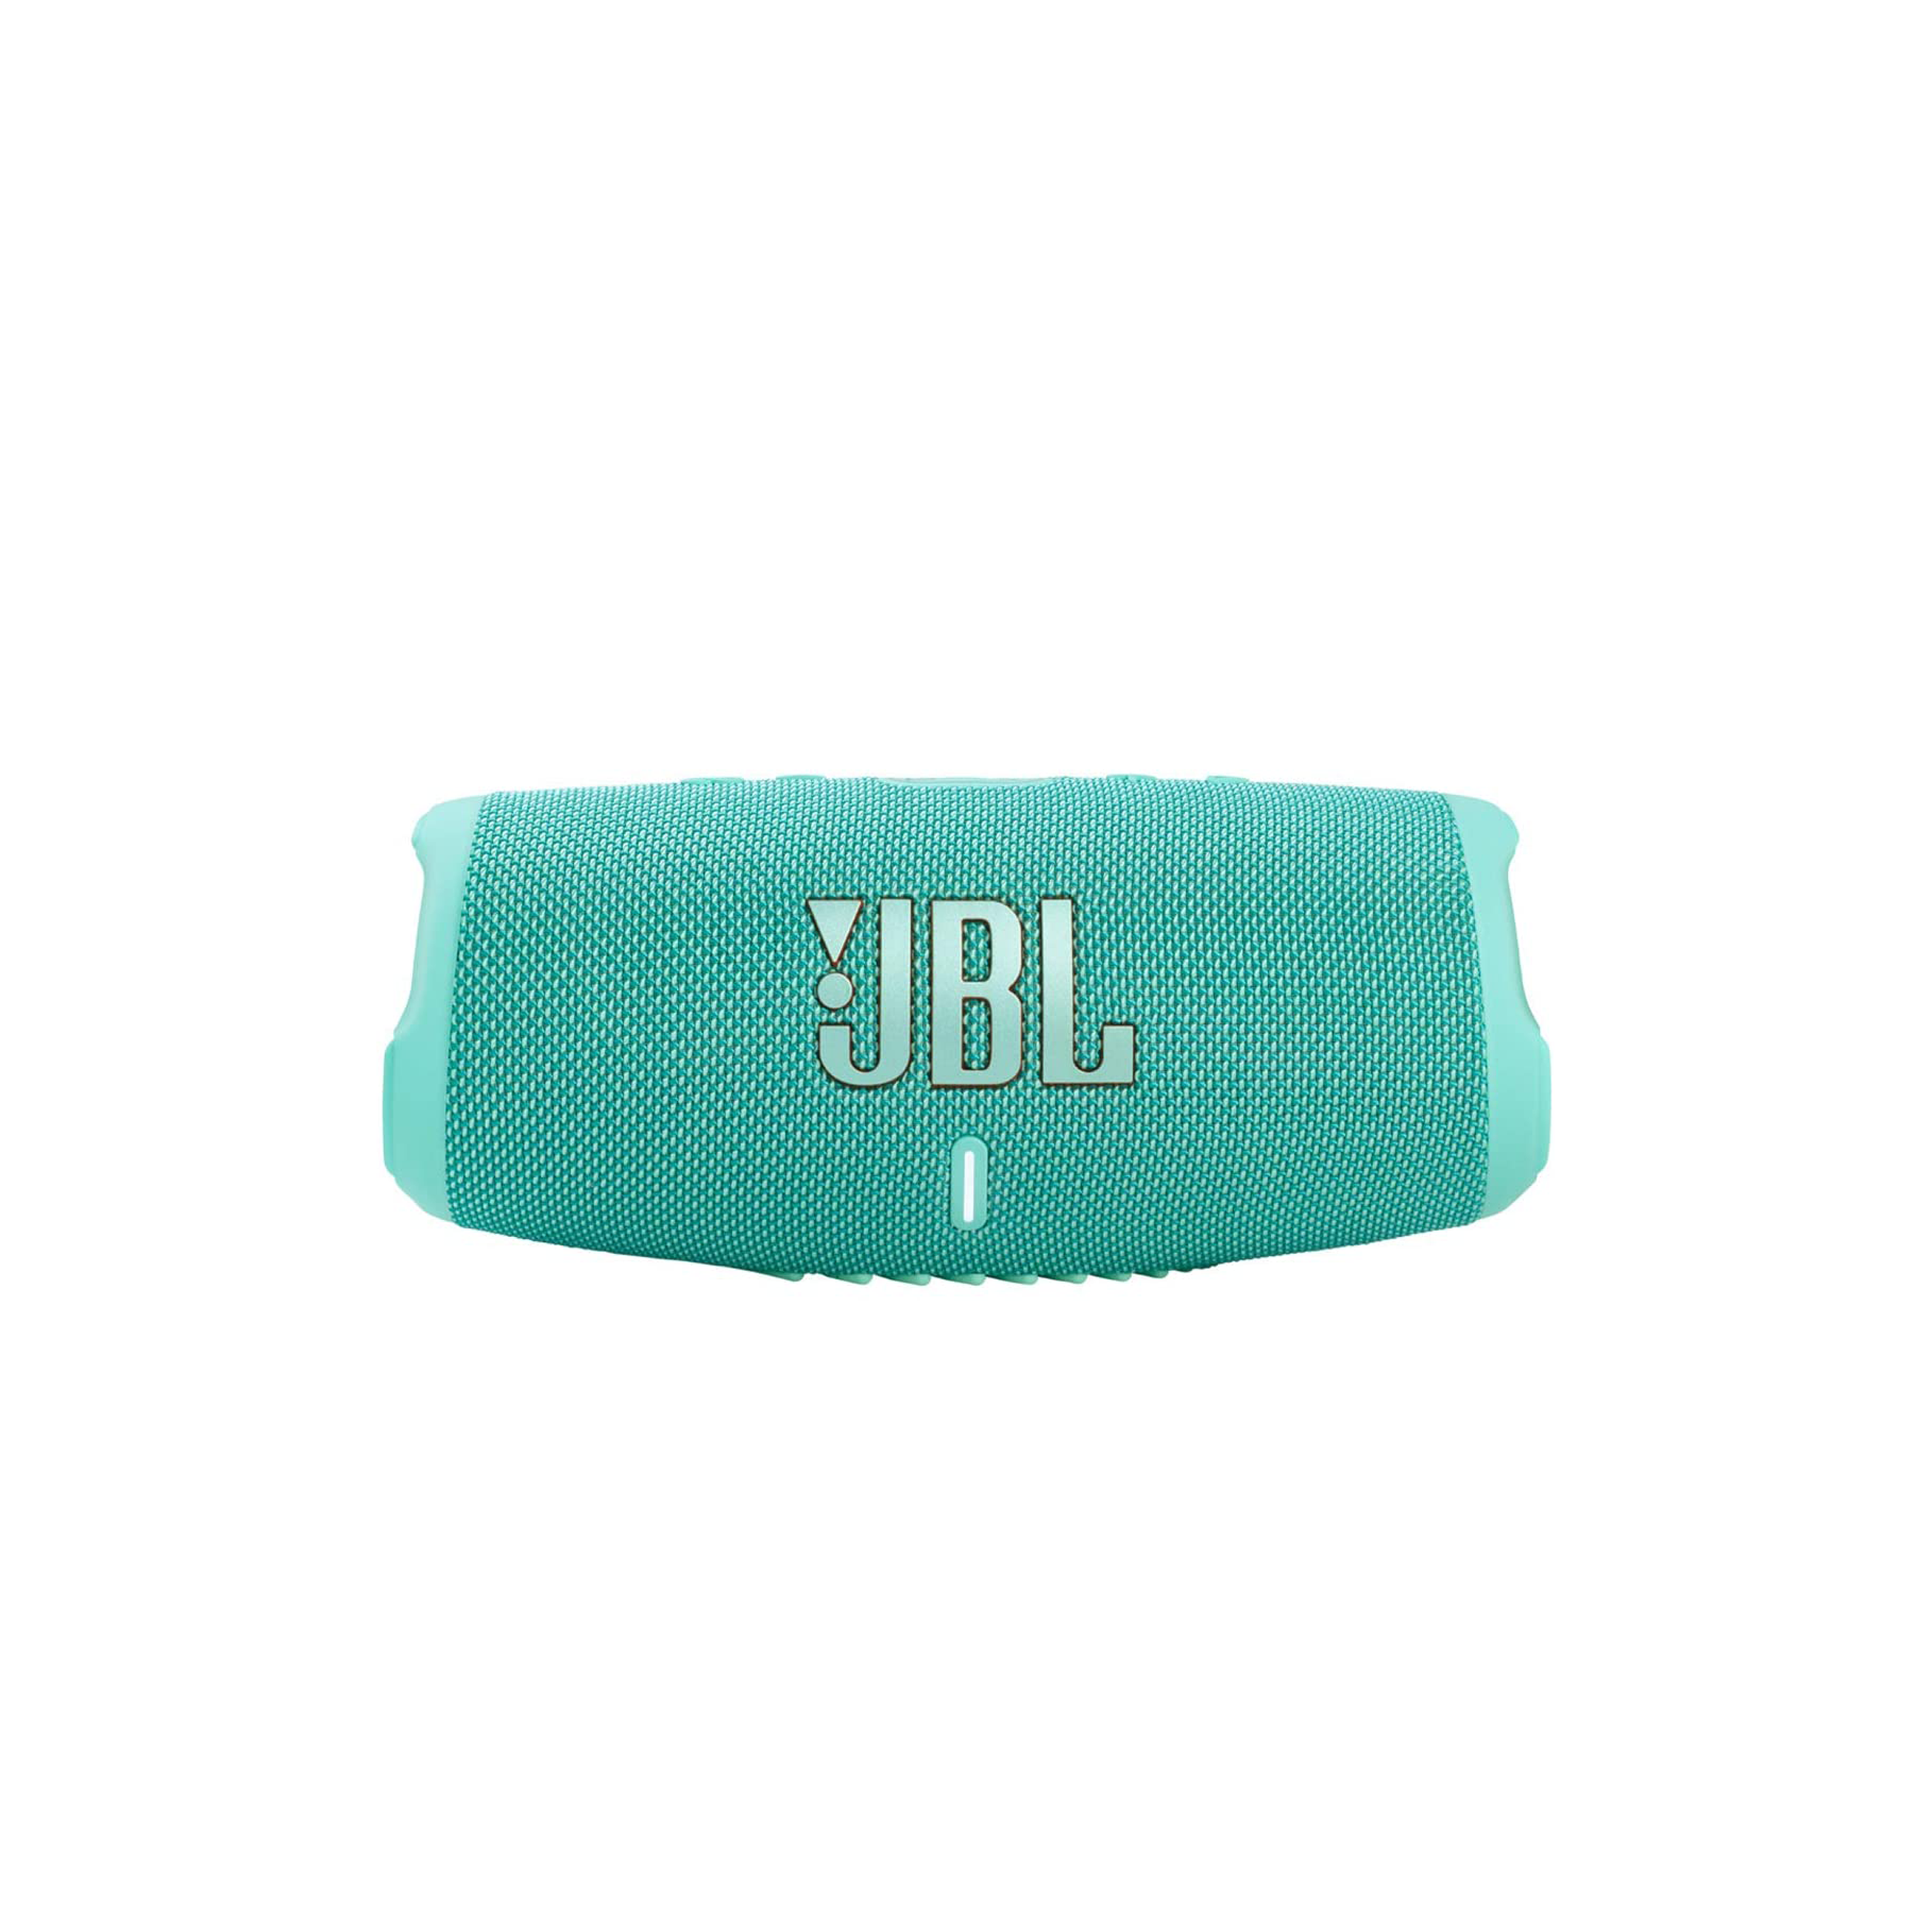 JBL Charge 5 haut-parleur Bluetooth portable avec basse profonde, imperméable IP67 et épreuve de poussière